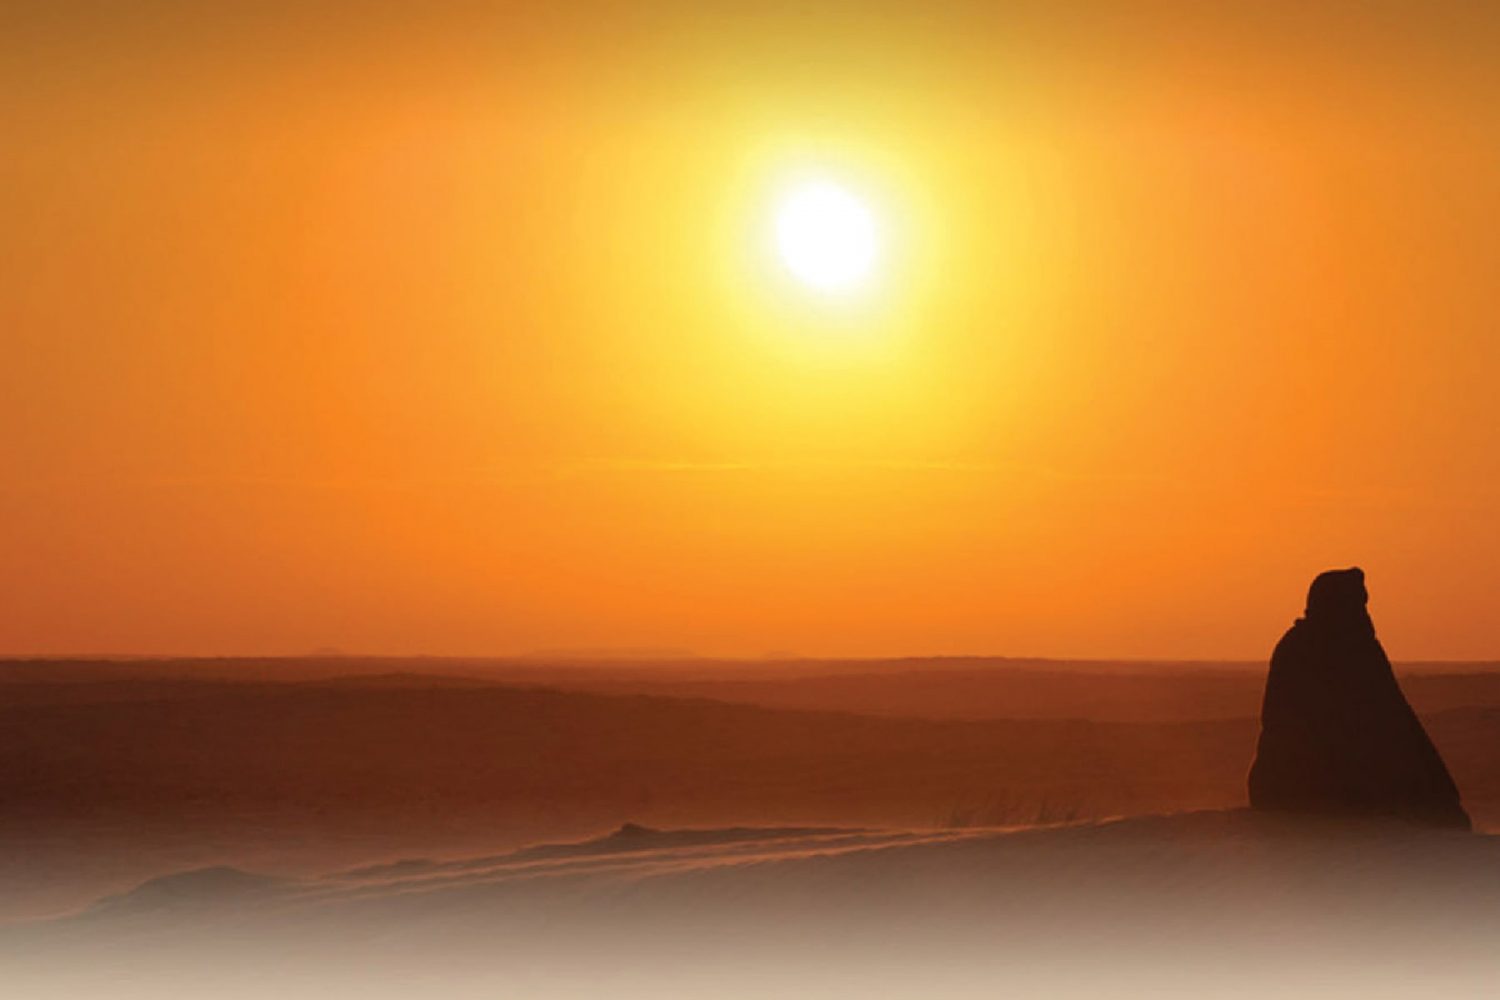 Sahara Sunset and overnight in the Tunisian desert